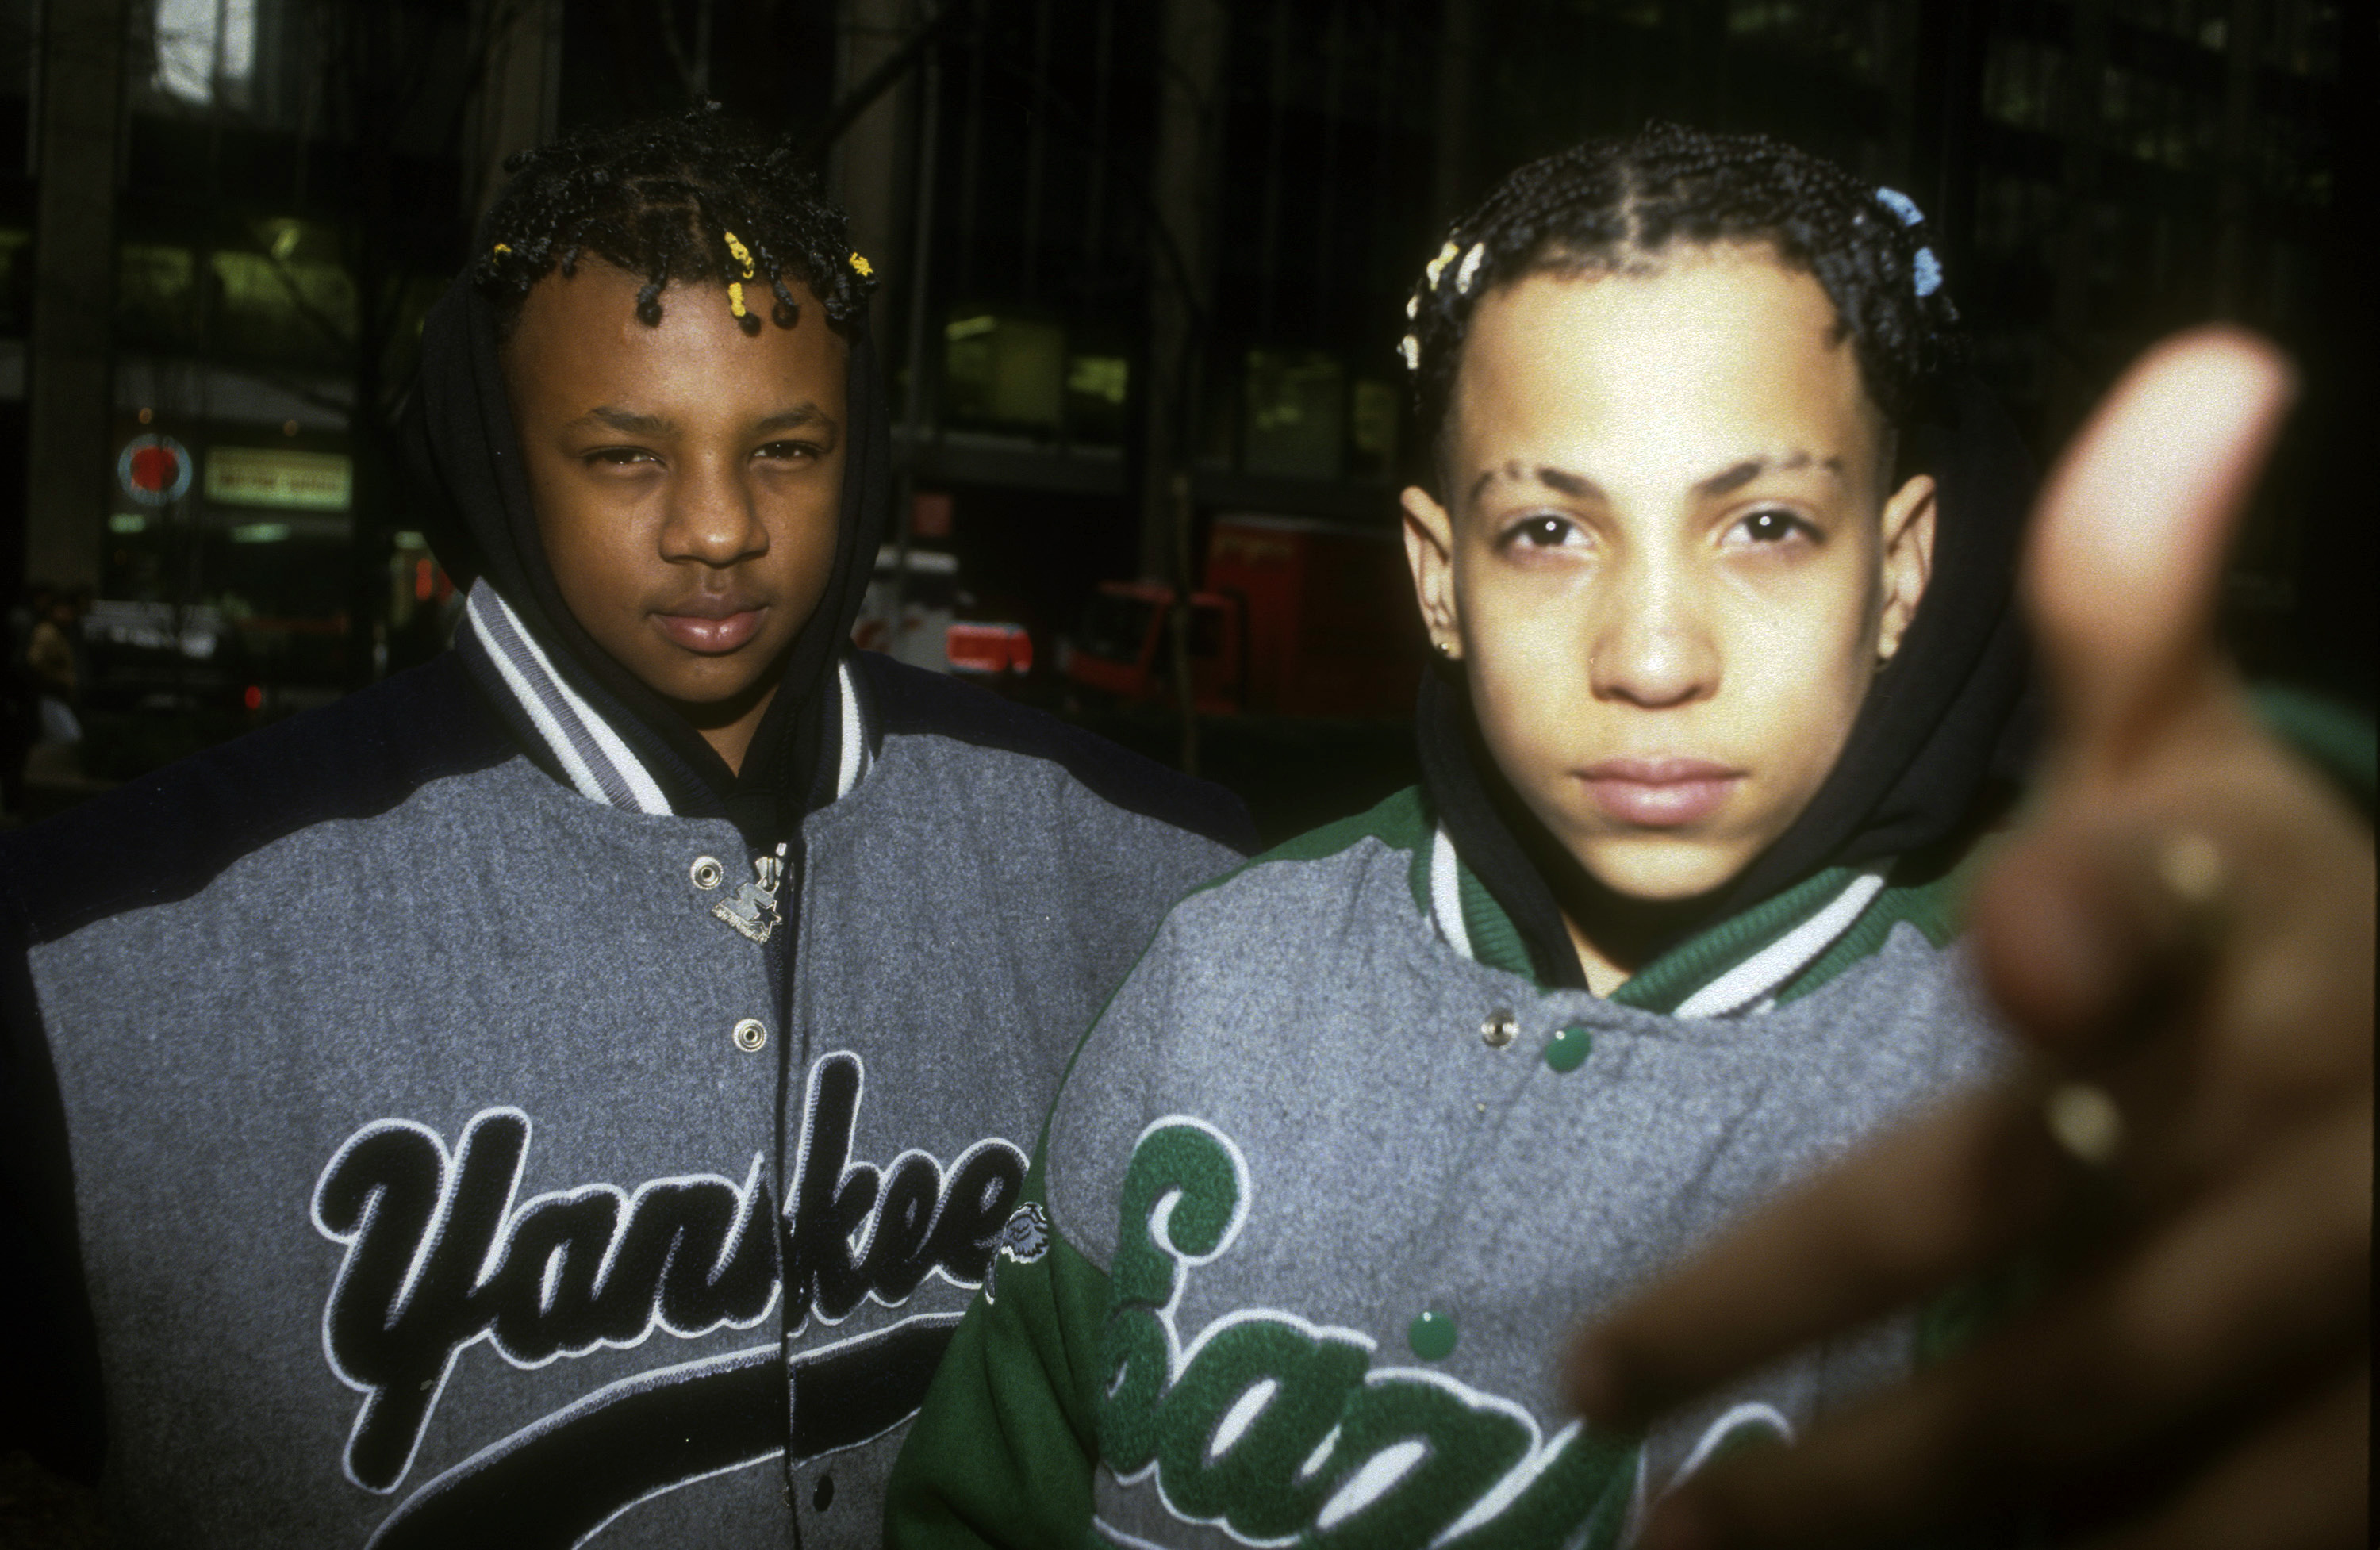 rappers wearing jerseys 2000